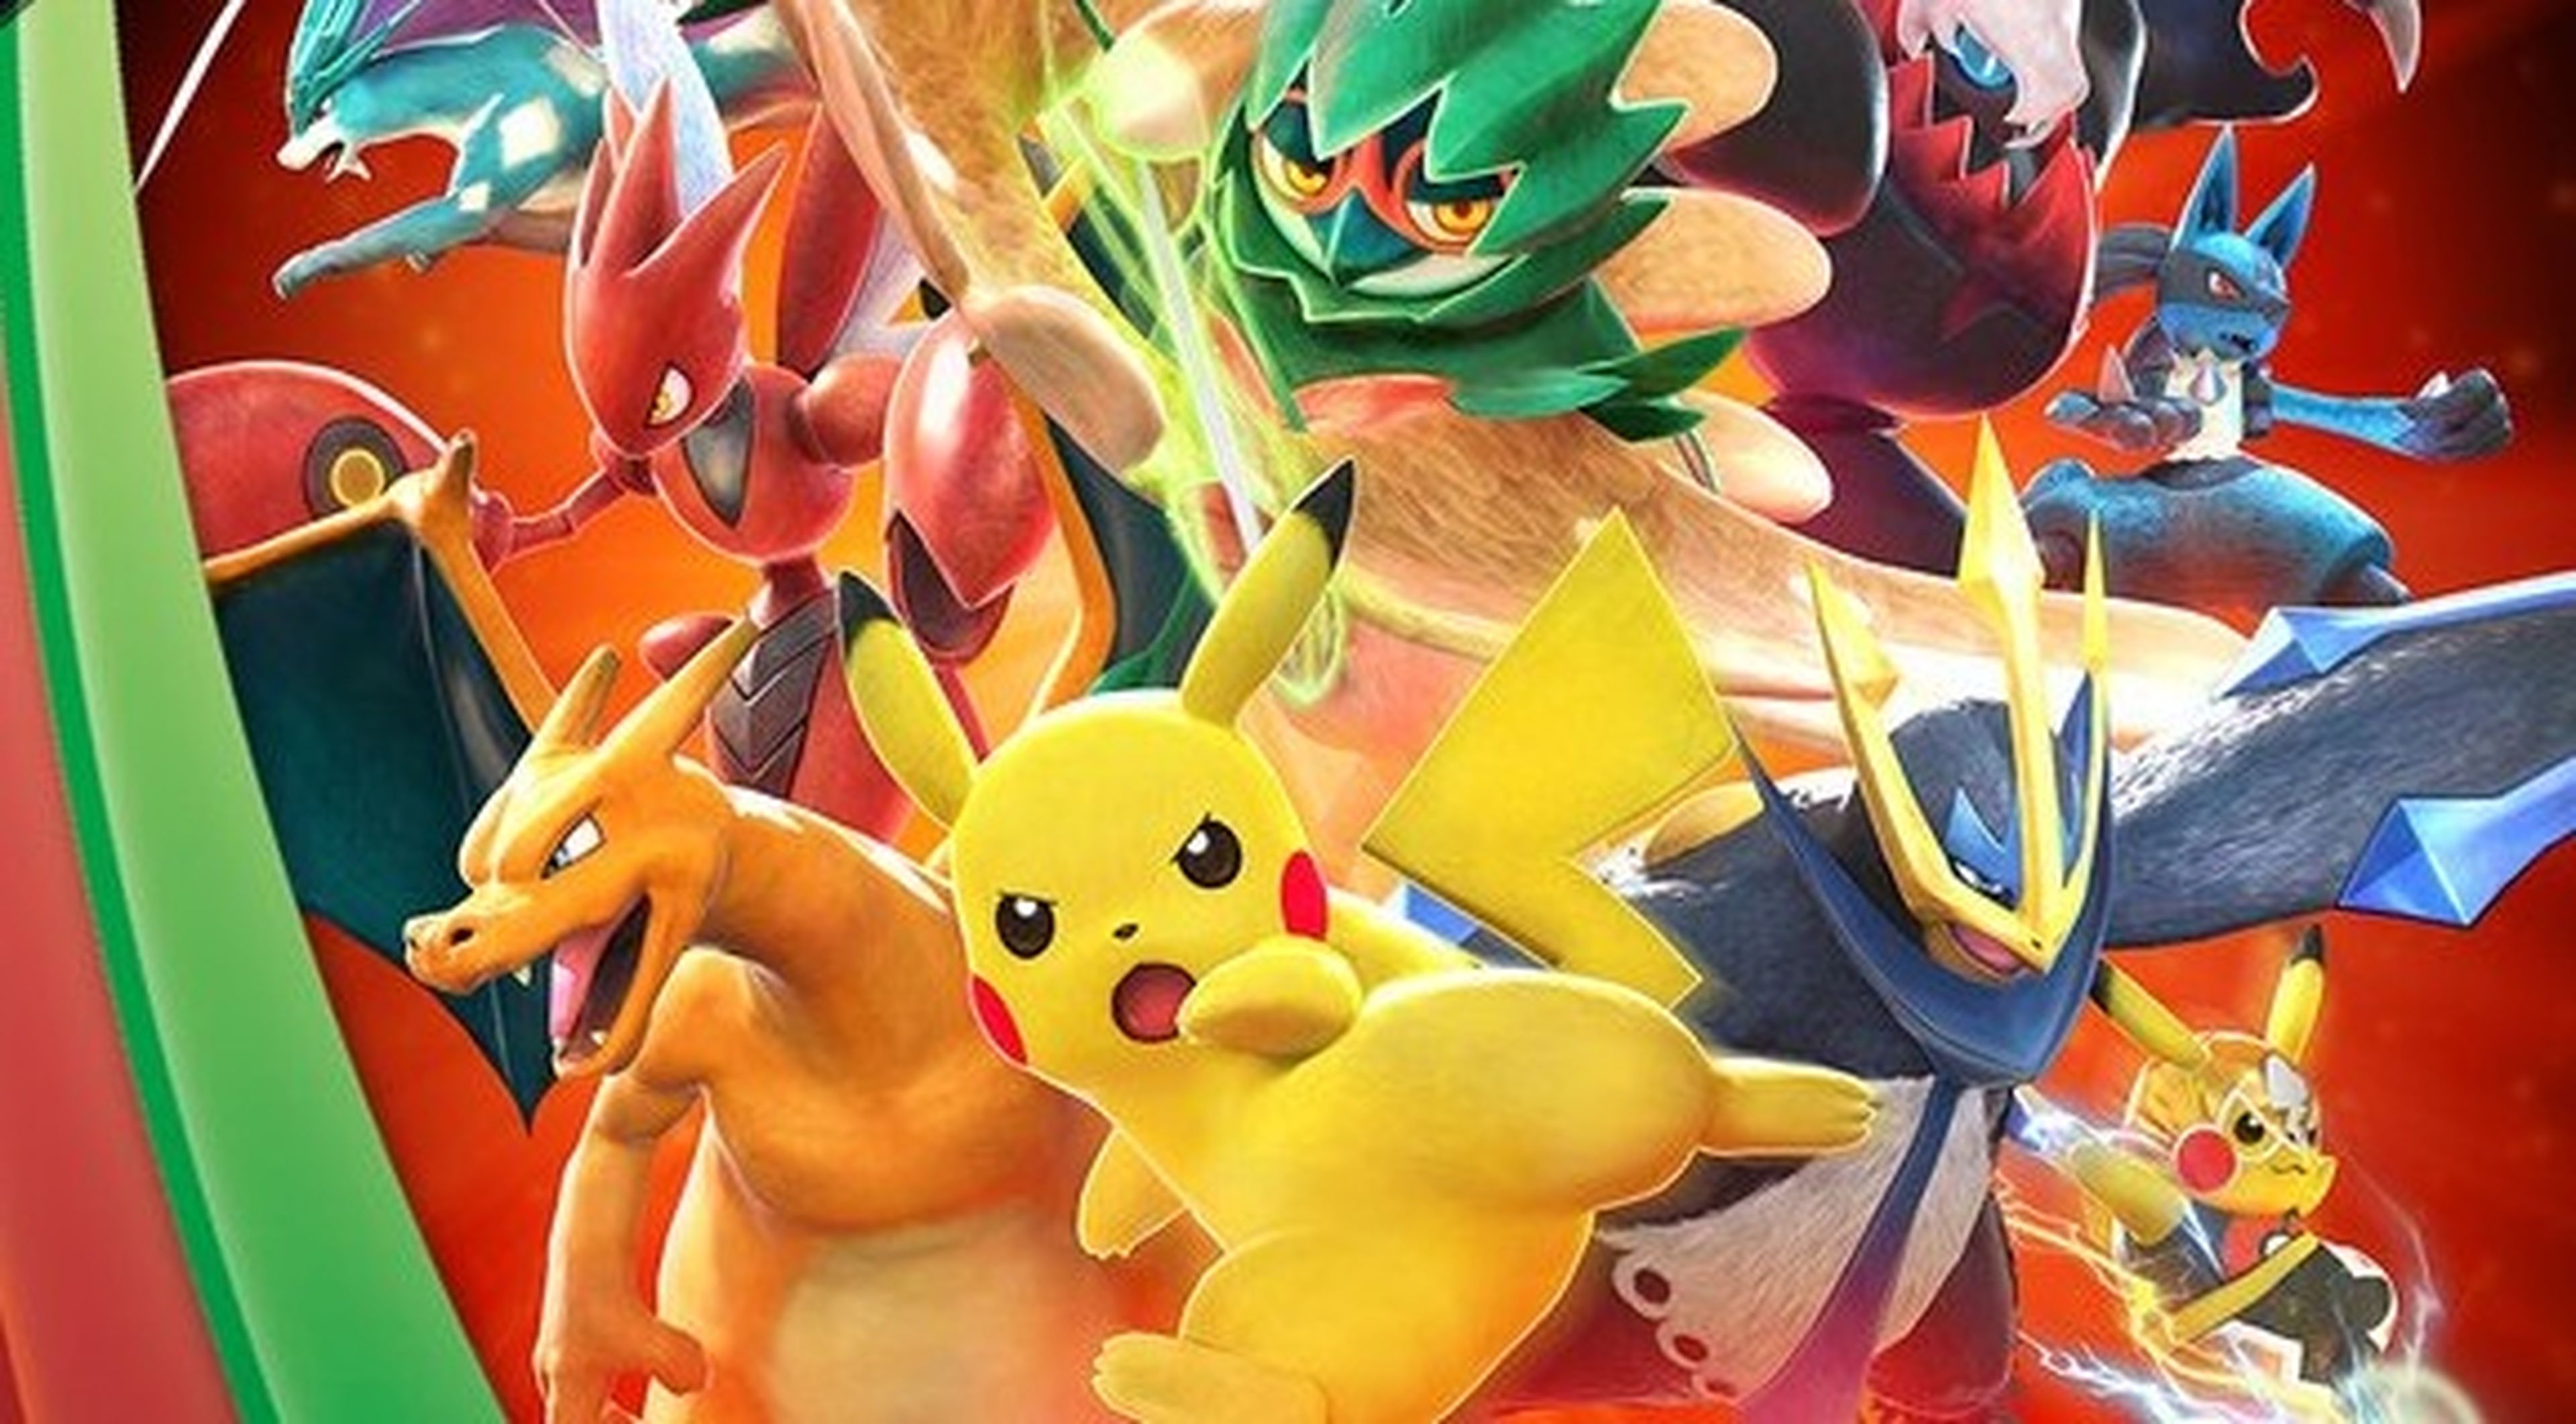 ¡Pokkén Tournament DX, Pokémon Ultrasol y Pokémon Ultraluna estarán disponibles en 2017!